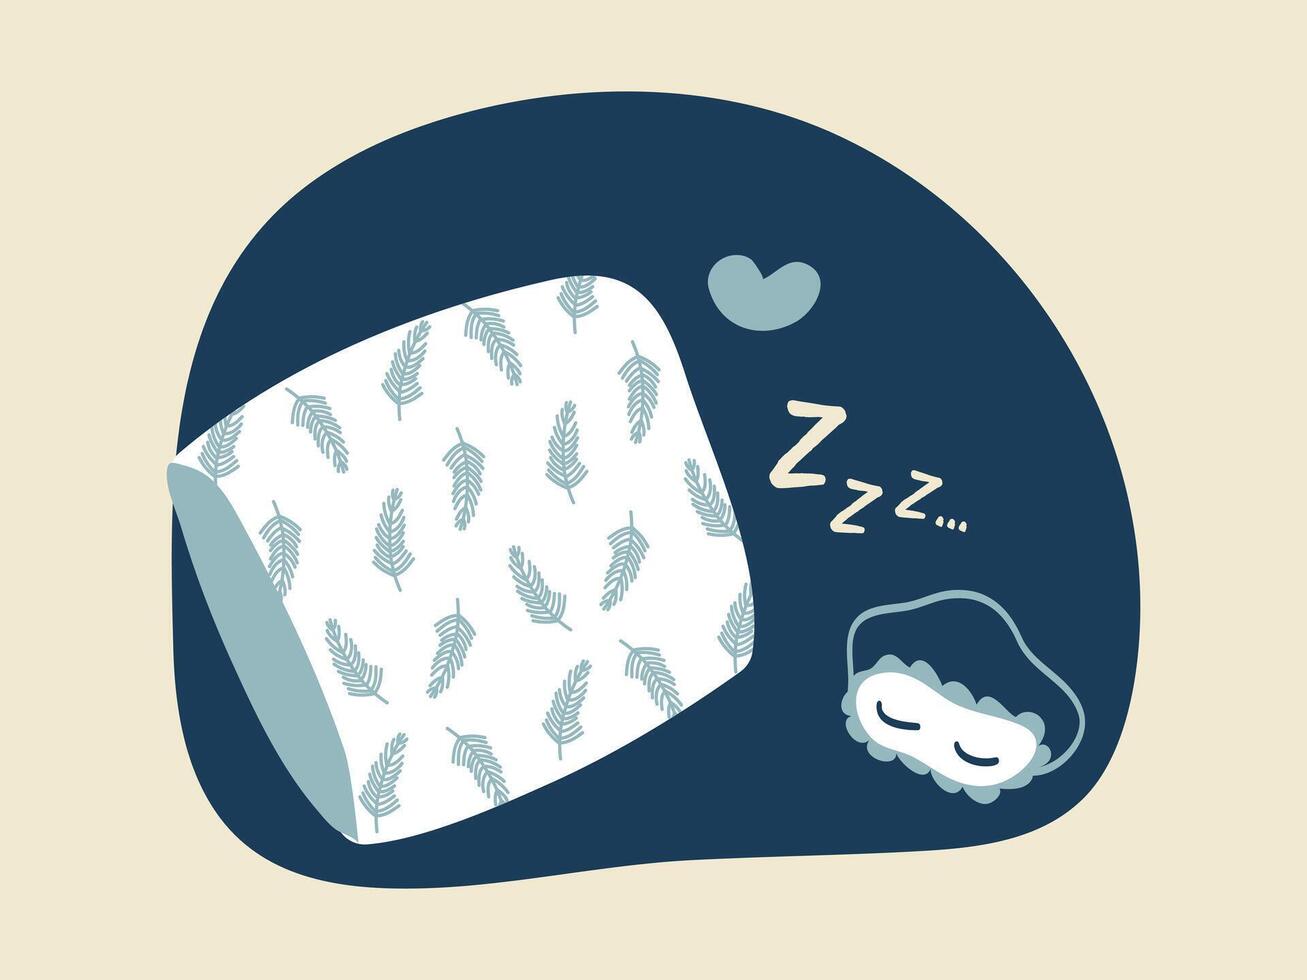 slaap en rust uit illustratie. wit hoofdkussen met veer patronen, slaap masker Aan een blauw achtergrond. slaap geluid en hart. vector illustratie